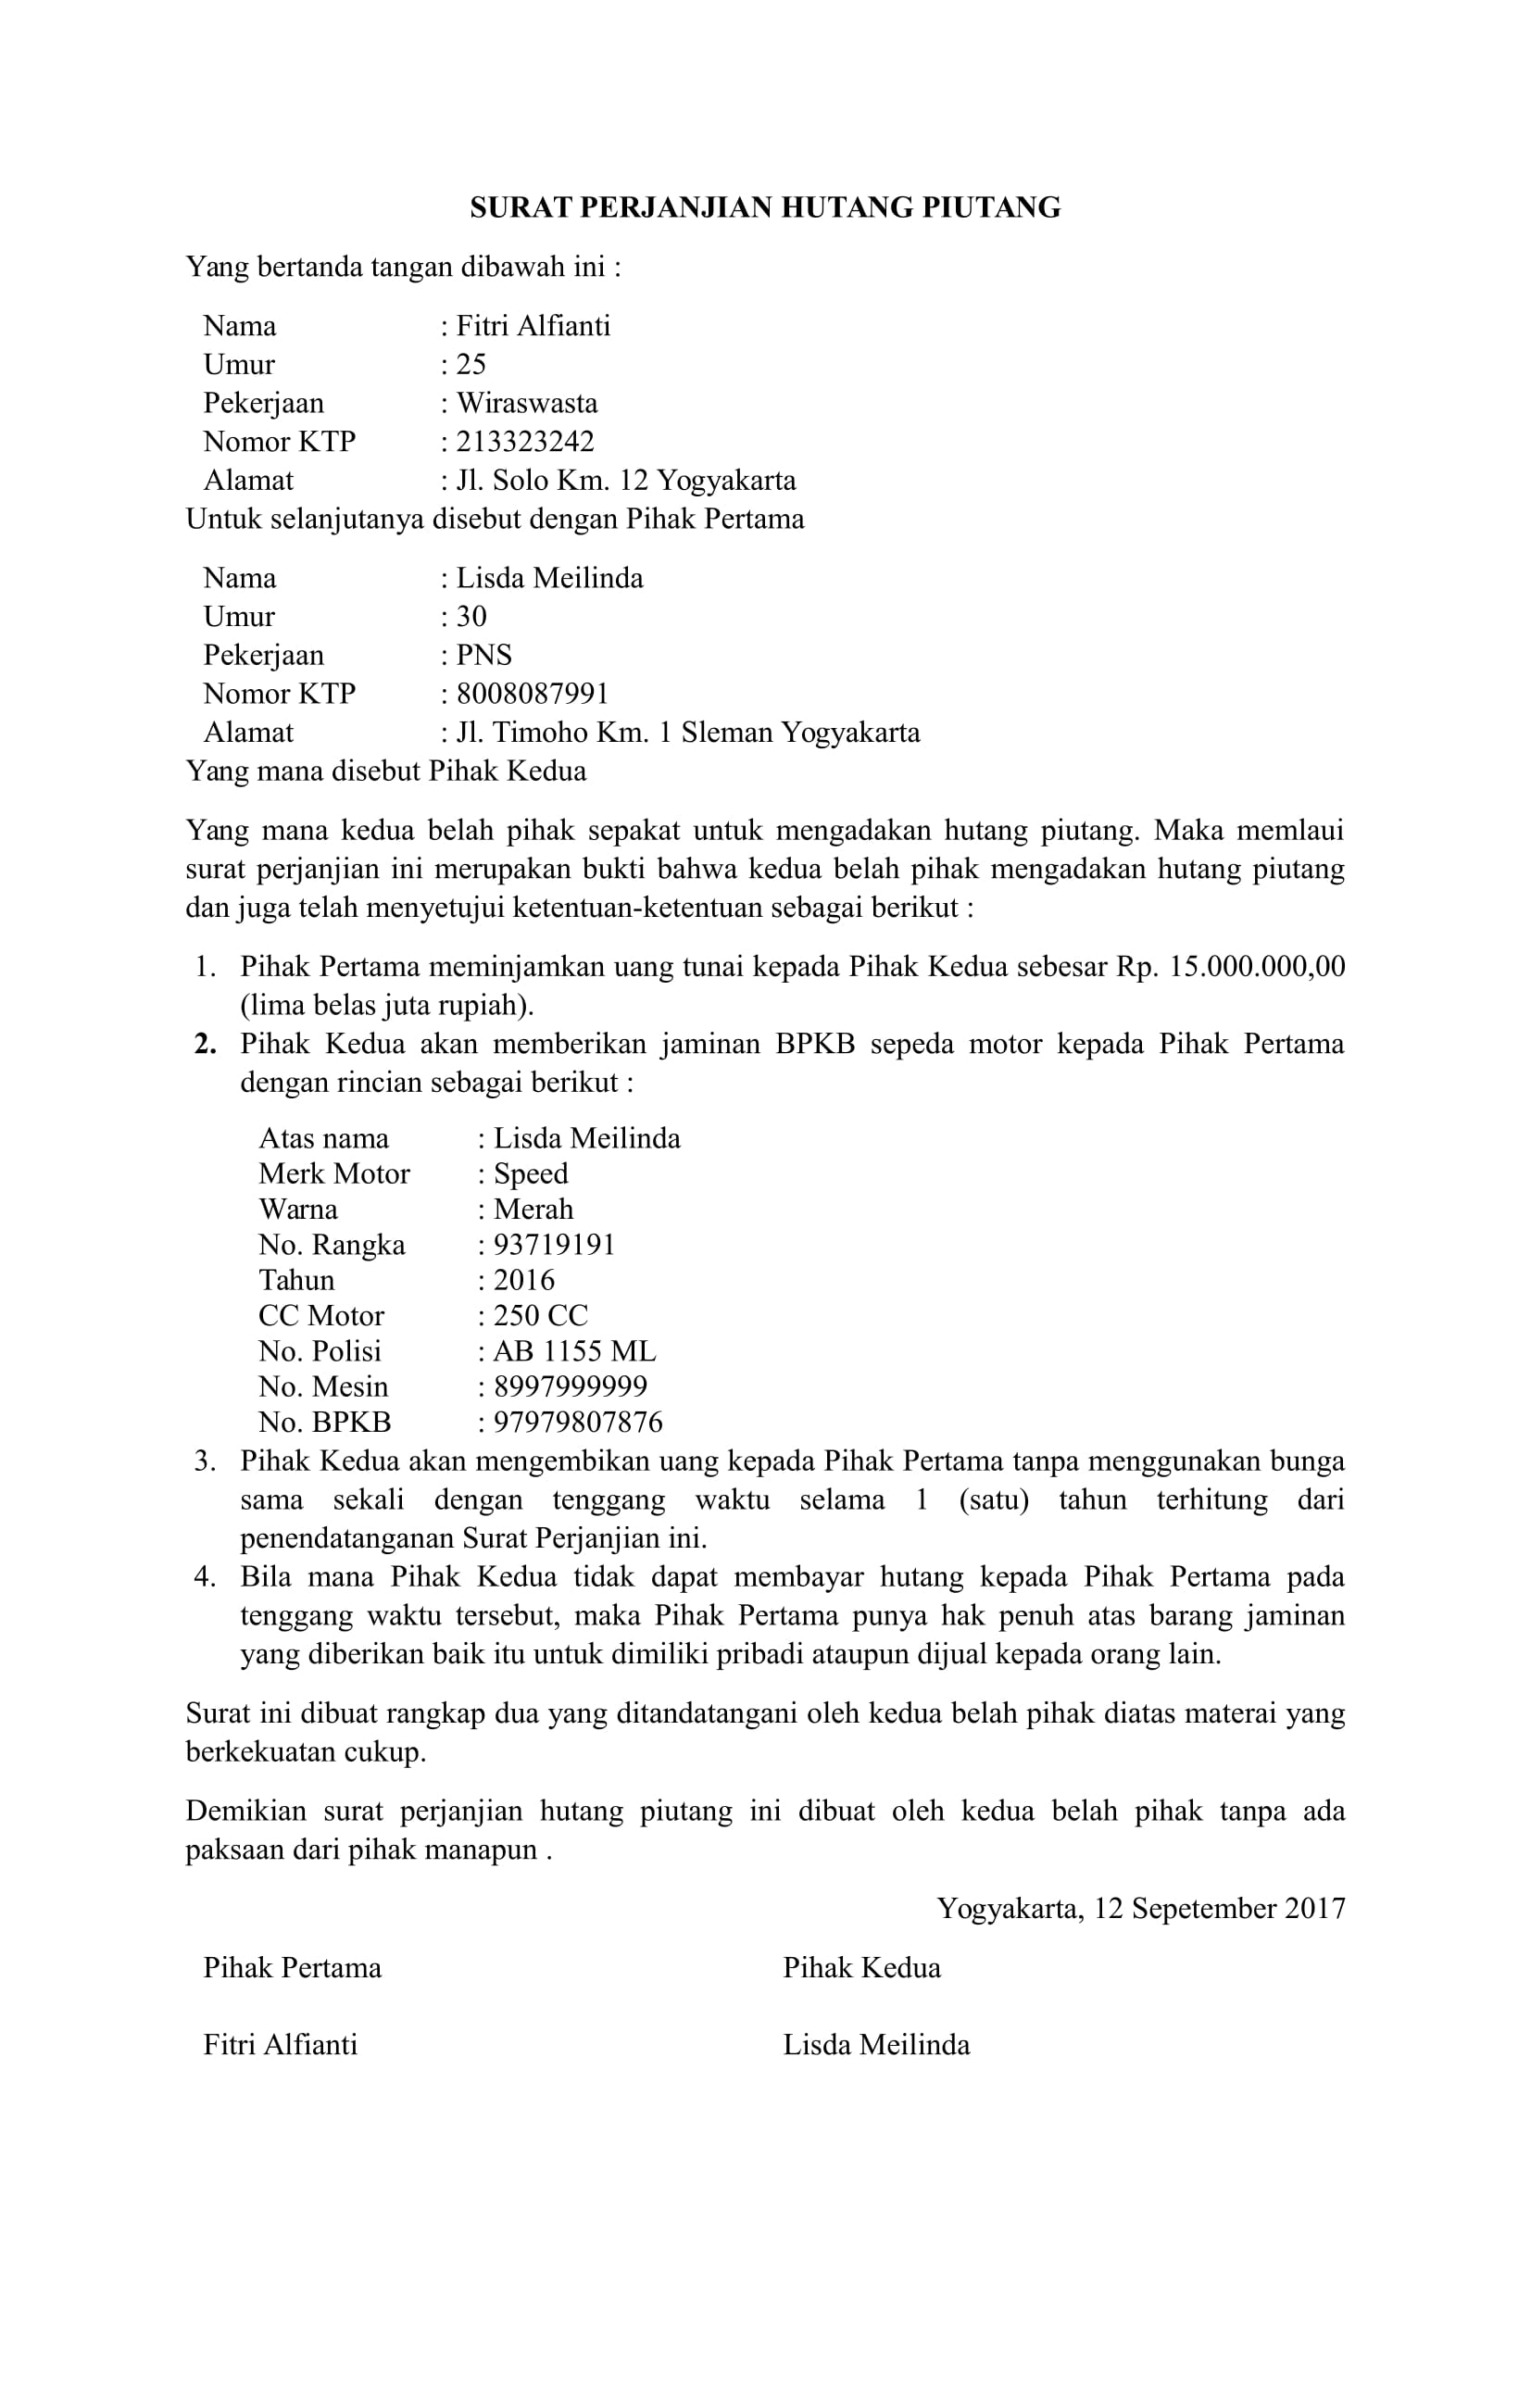 Contoh Surat Pernyataan Hutang Piutang Gawe Cv